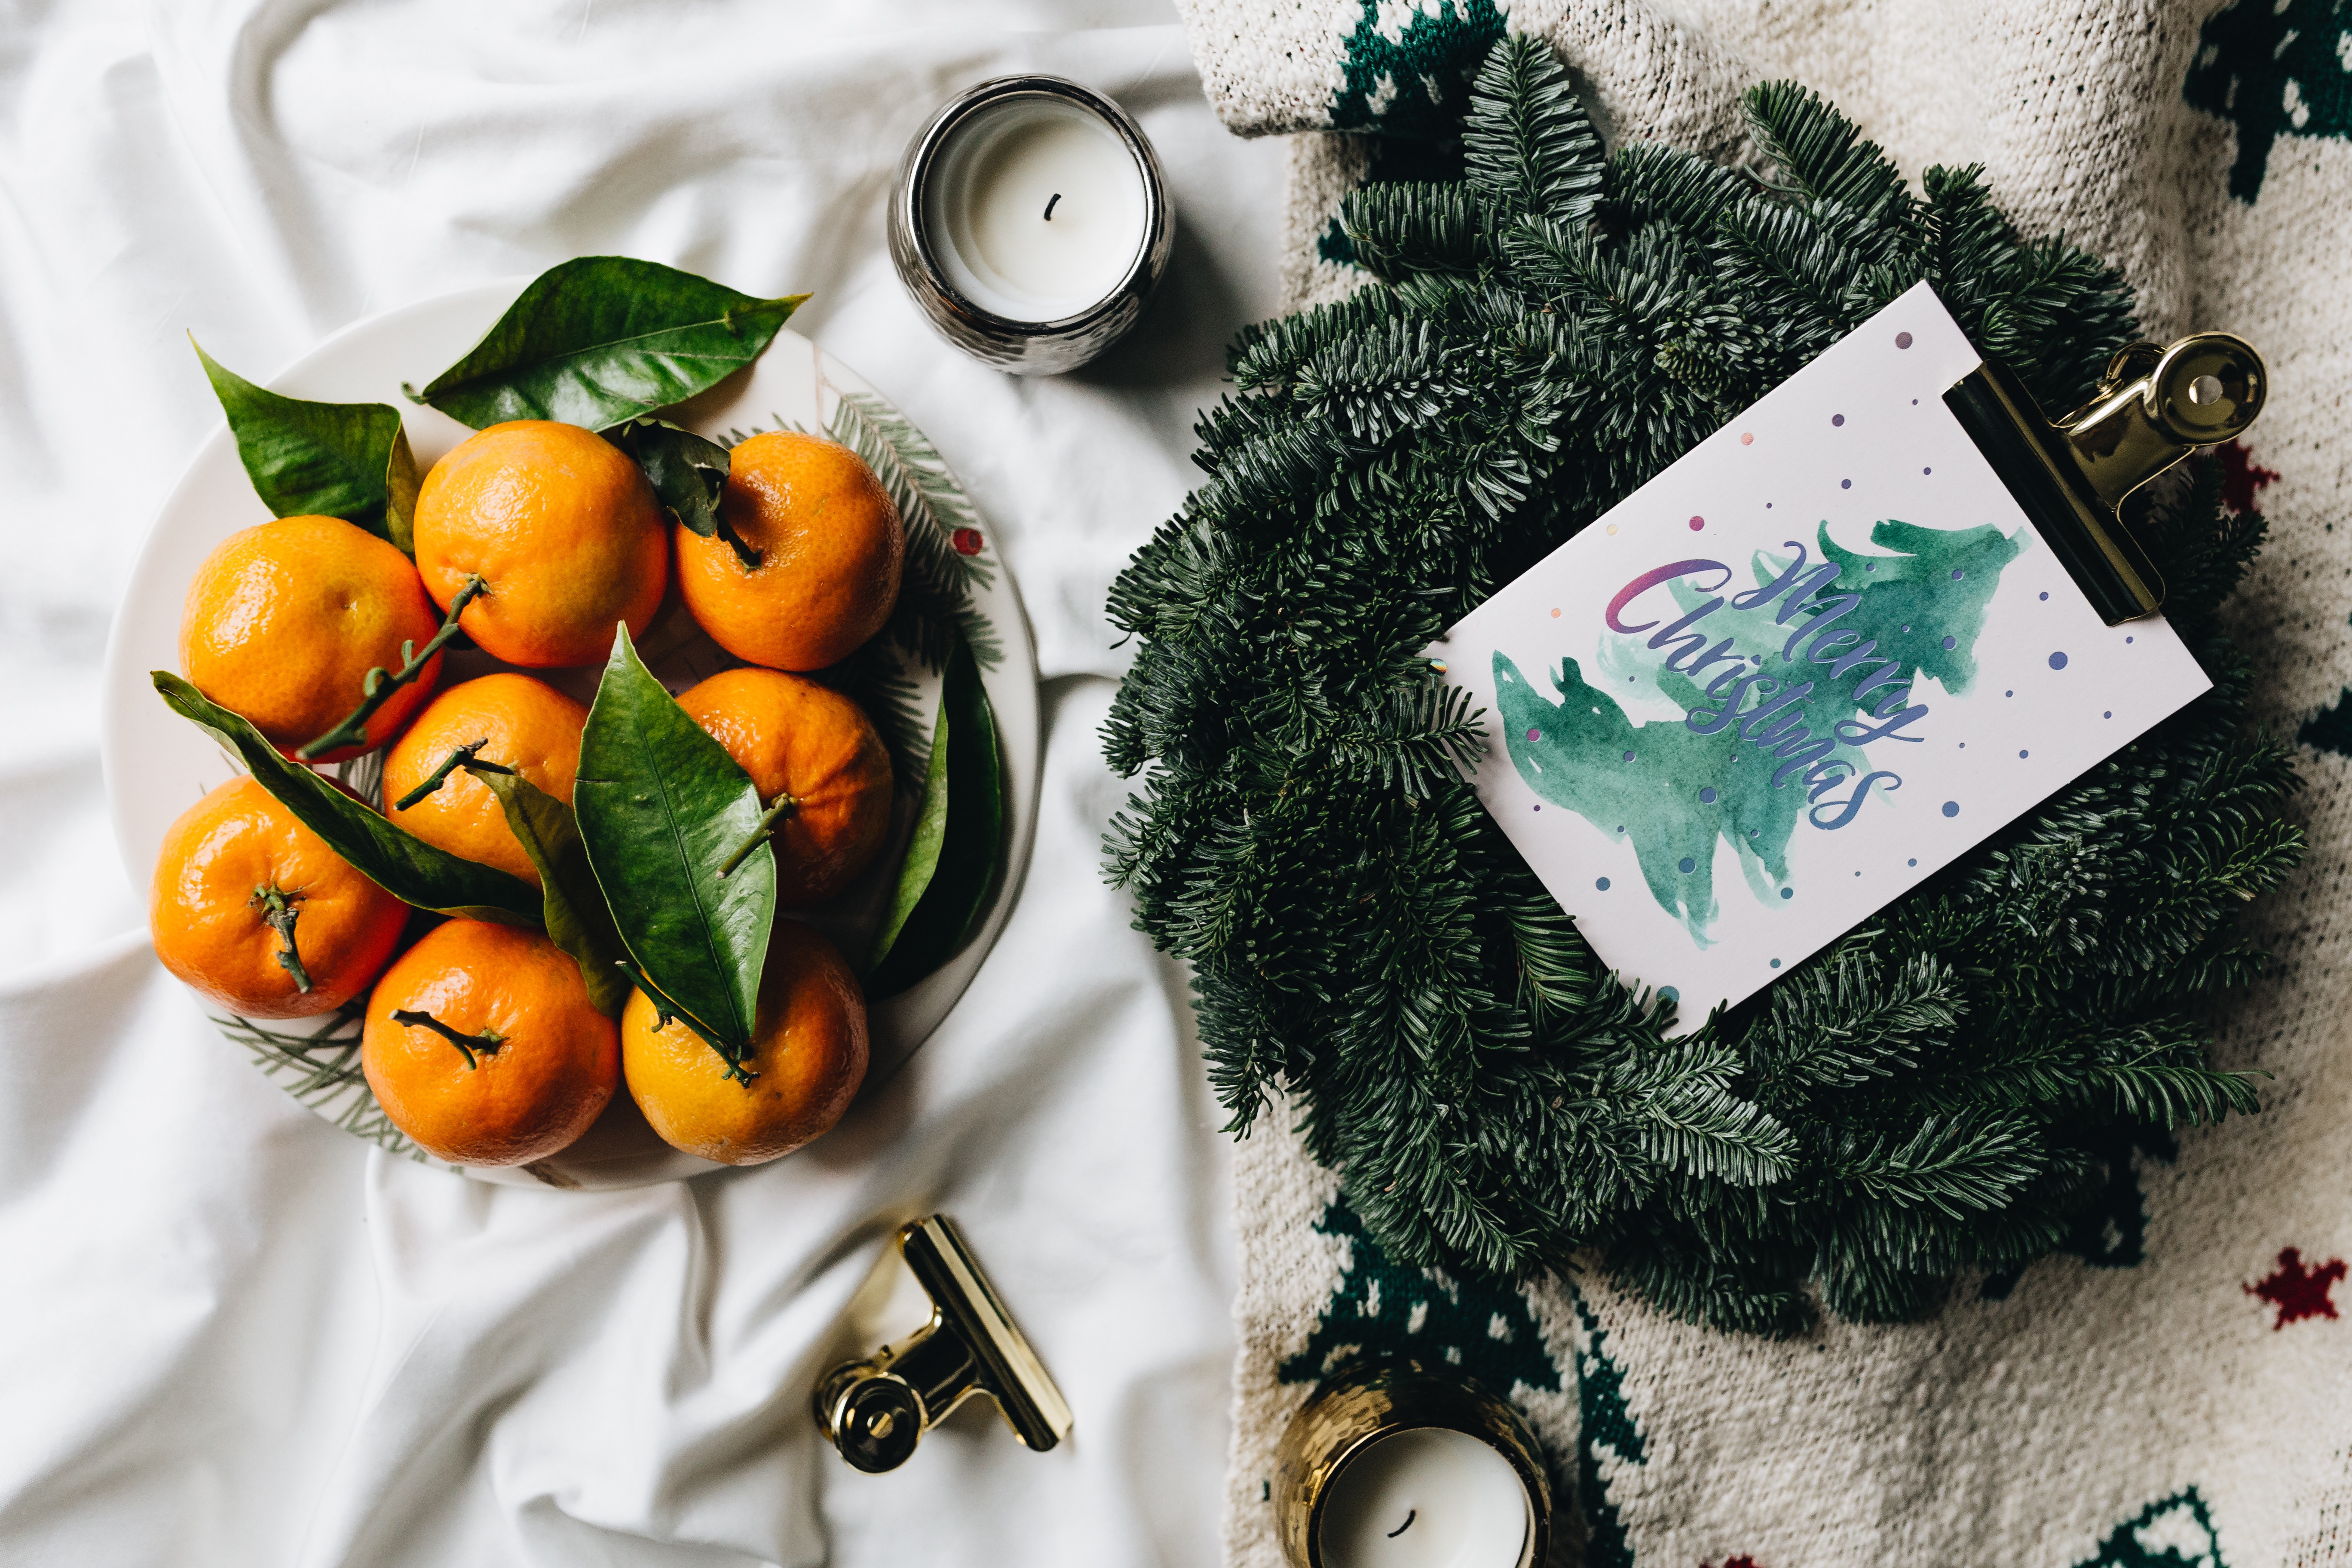 Tangerines on a simple natural Christmas wreath by Karolina Grabowska